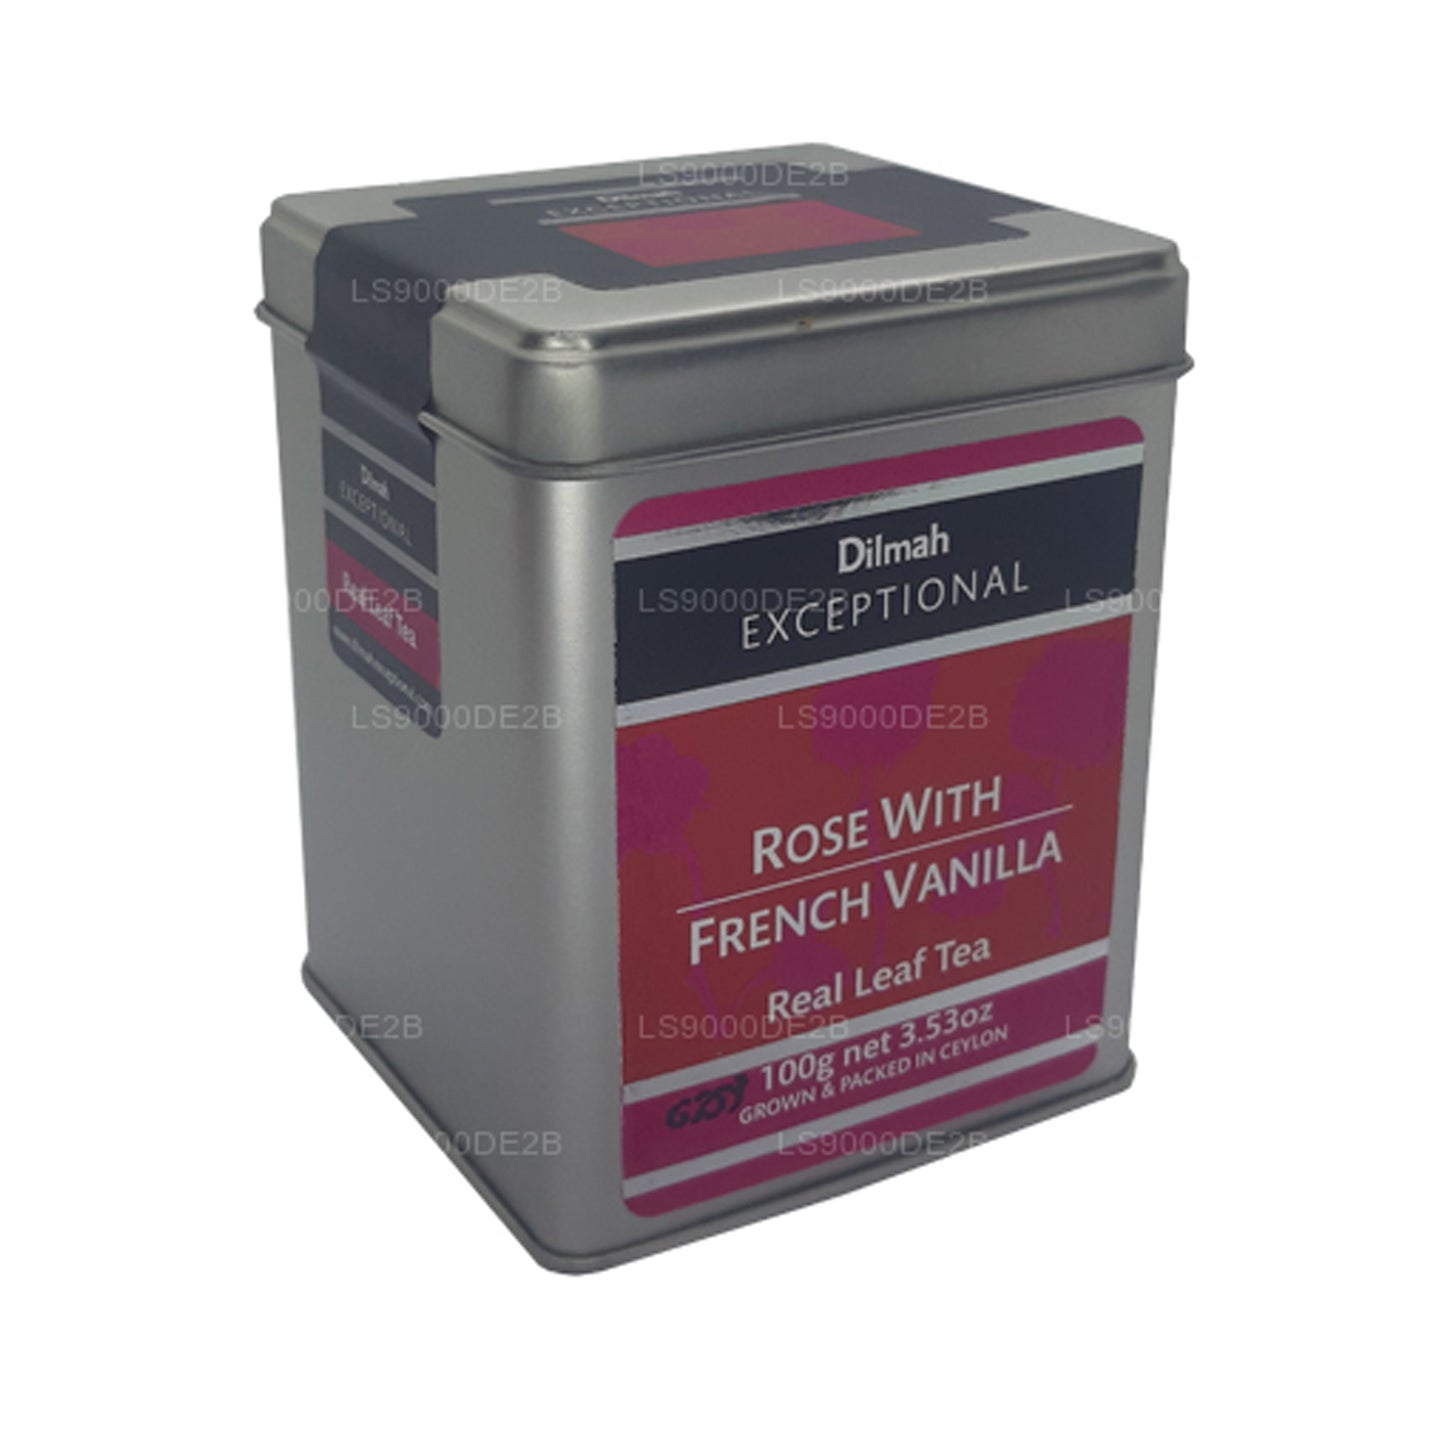 Dilmah erakordne roos Prantsuse Vanilje Real Leaf Tea (40g) 20 tee kotid